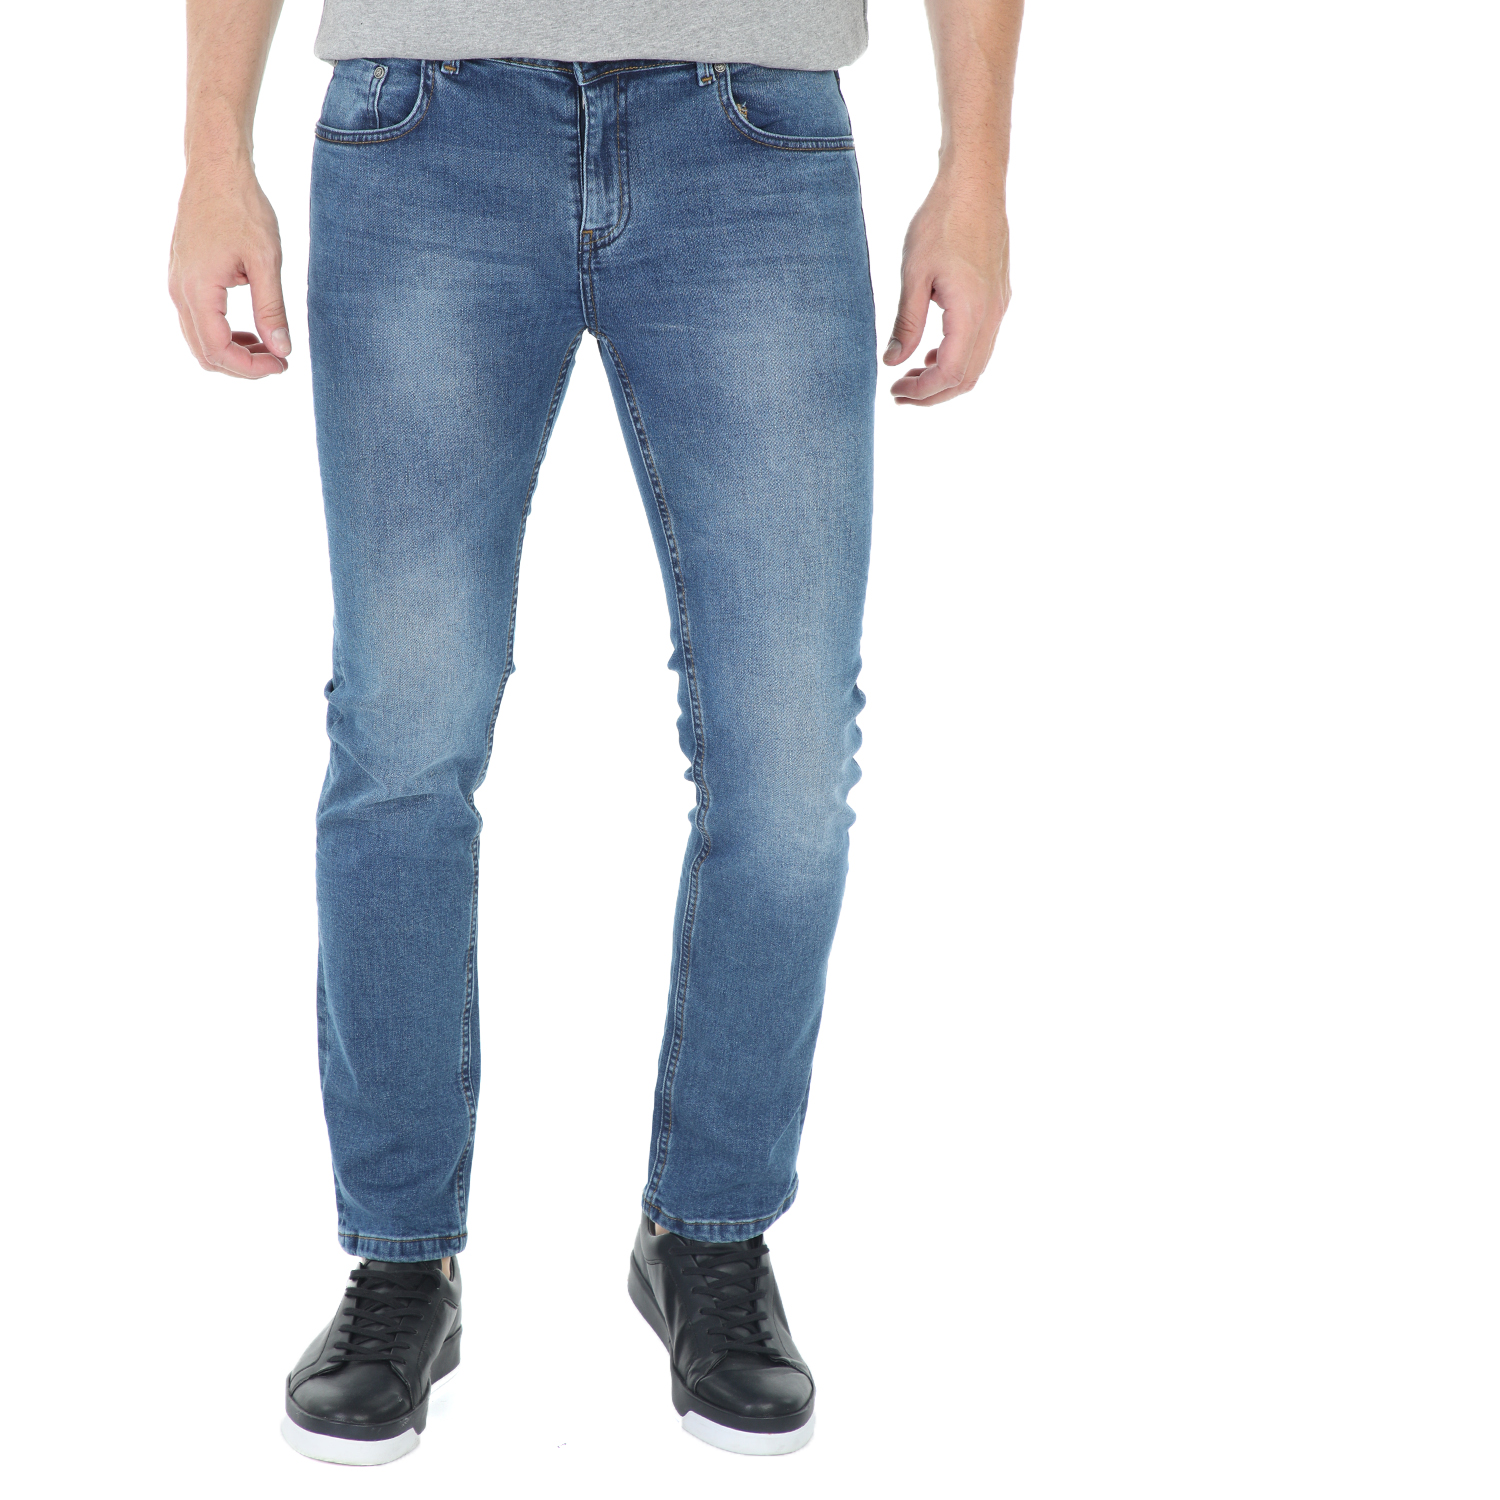 Ανδρικά/Ρούχα/Τζίν/Skinny CATAMARAN SAILWEAR - Ανδρικό παντελόνι τζιν CATAMARAN SAILWEAR μπλε